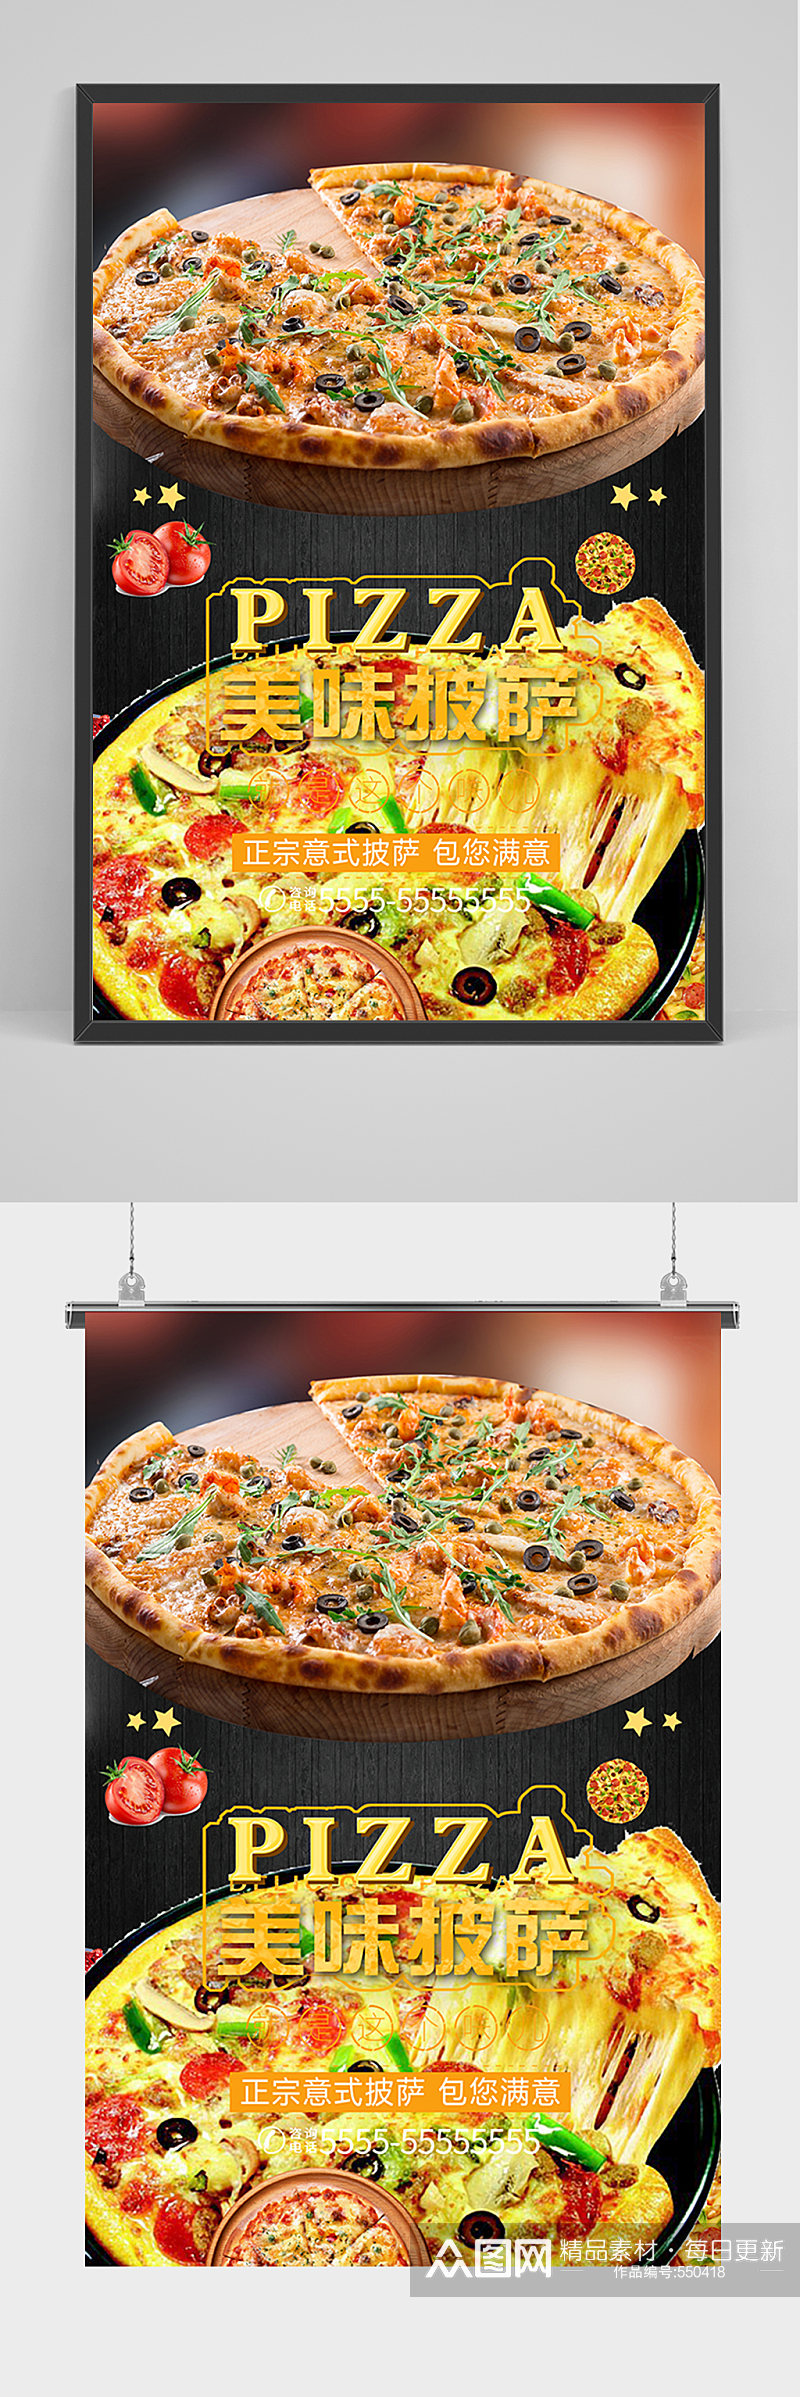 PIZZA美味披萨餐厅快餐海报素材